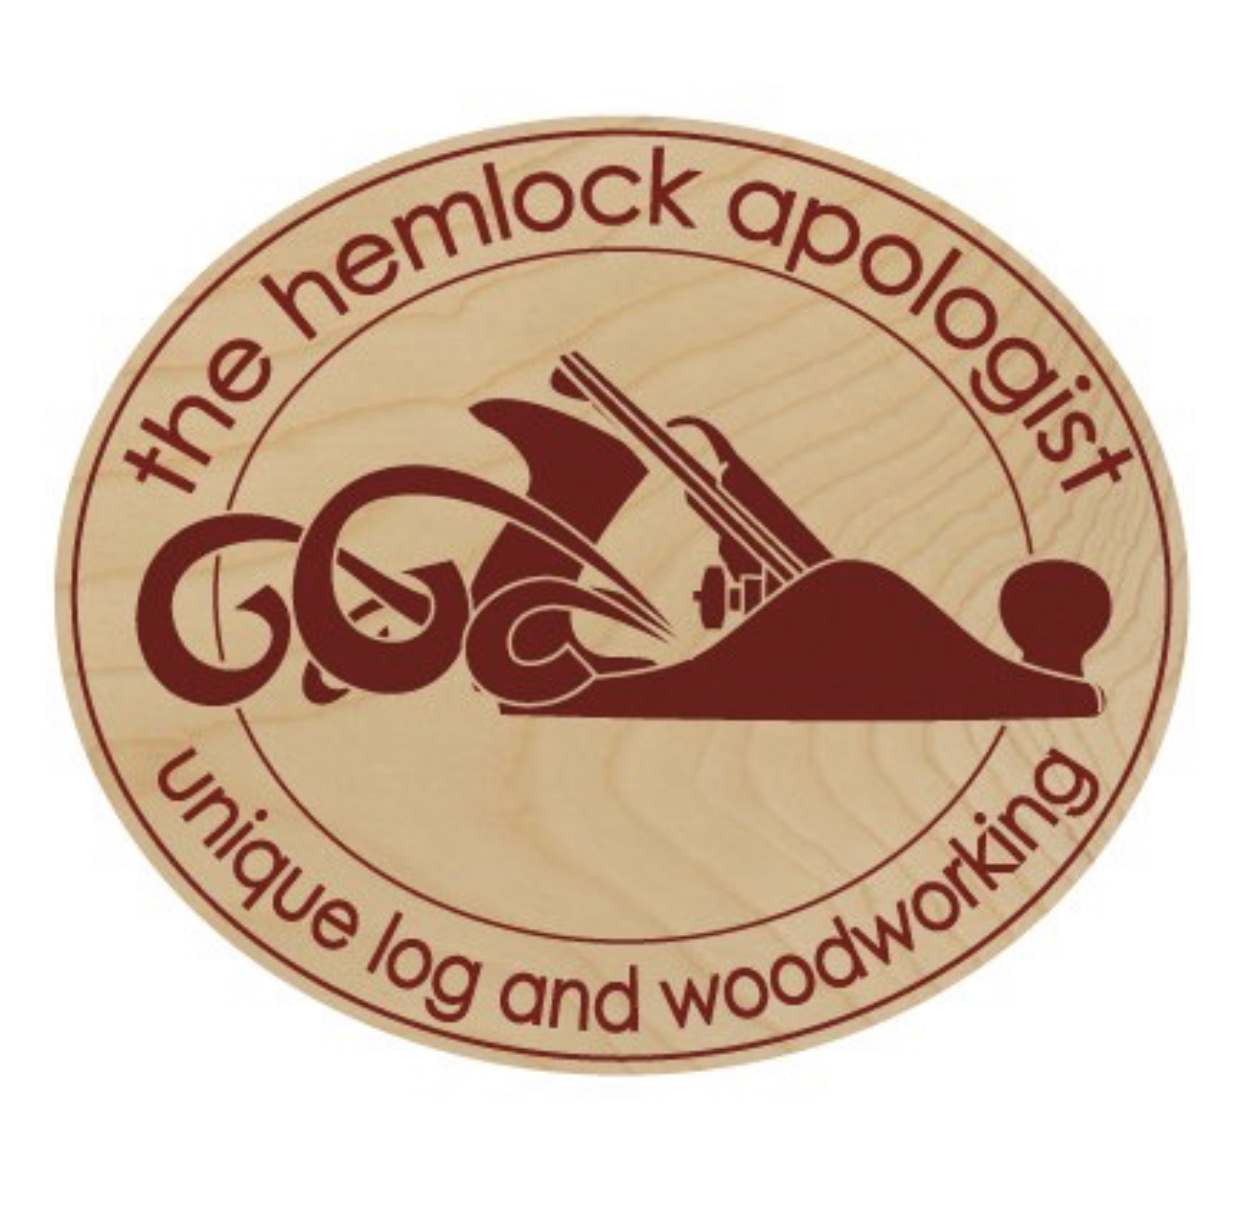 The Hemlock Apologist